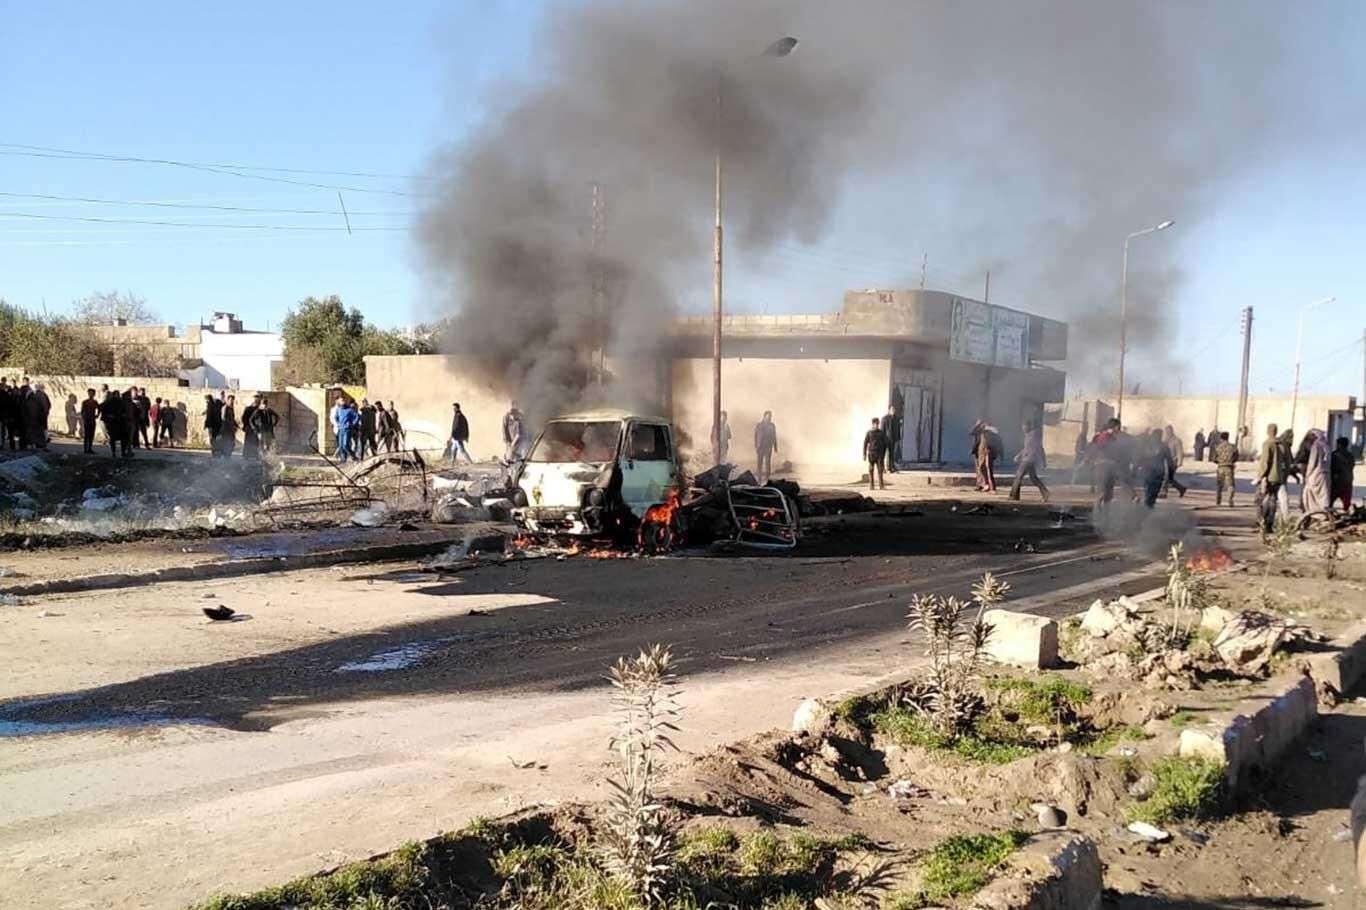 बम धमाके में सात लोगों की मौत, 11 घायल